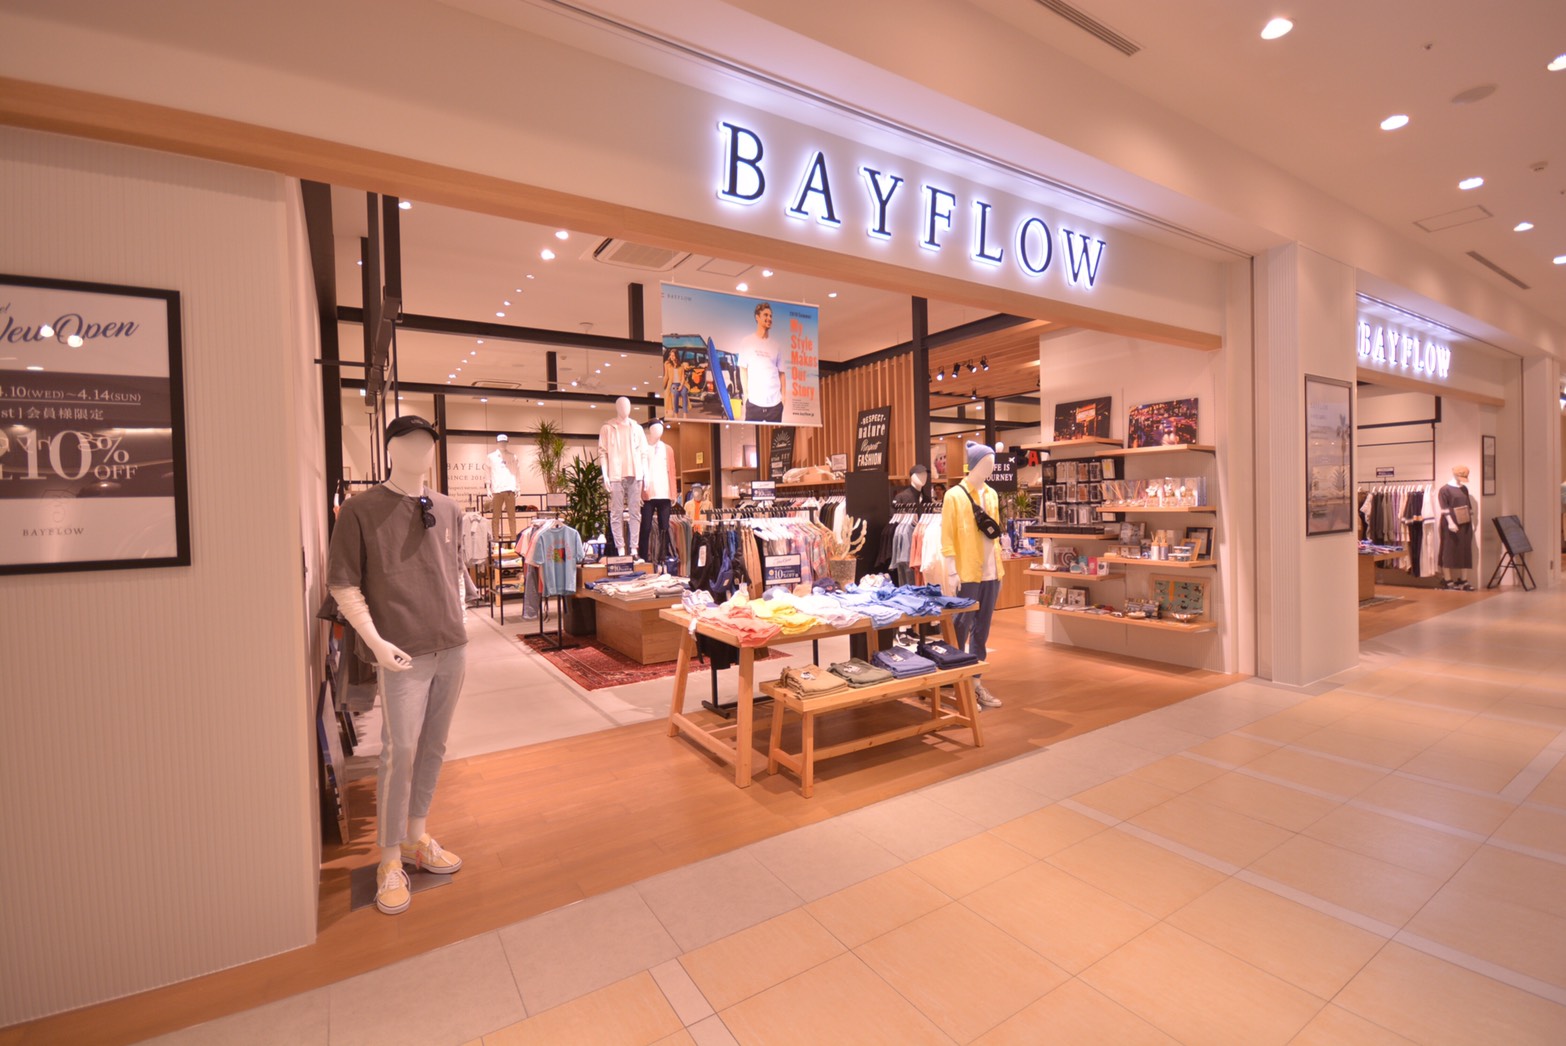 New Open ららぽーと横浜店 Bayflow オフィシャルブランドサイト